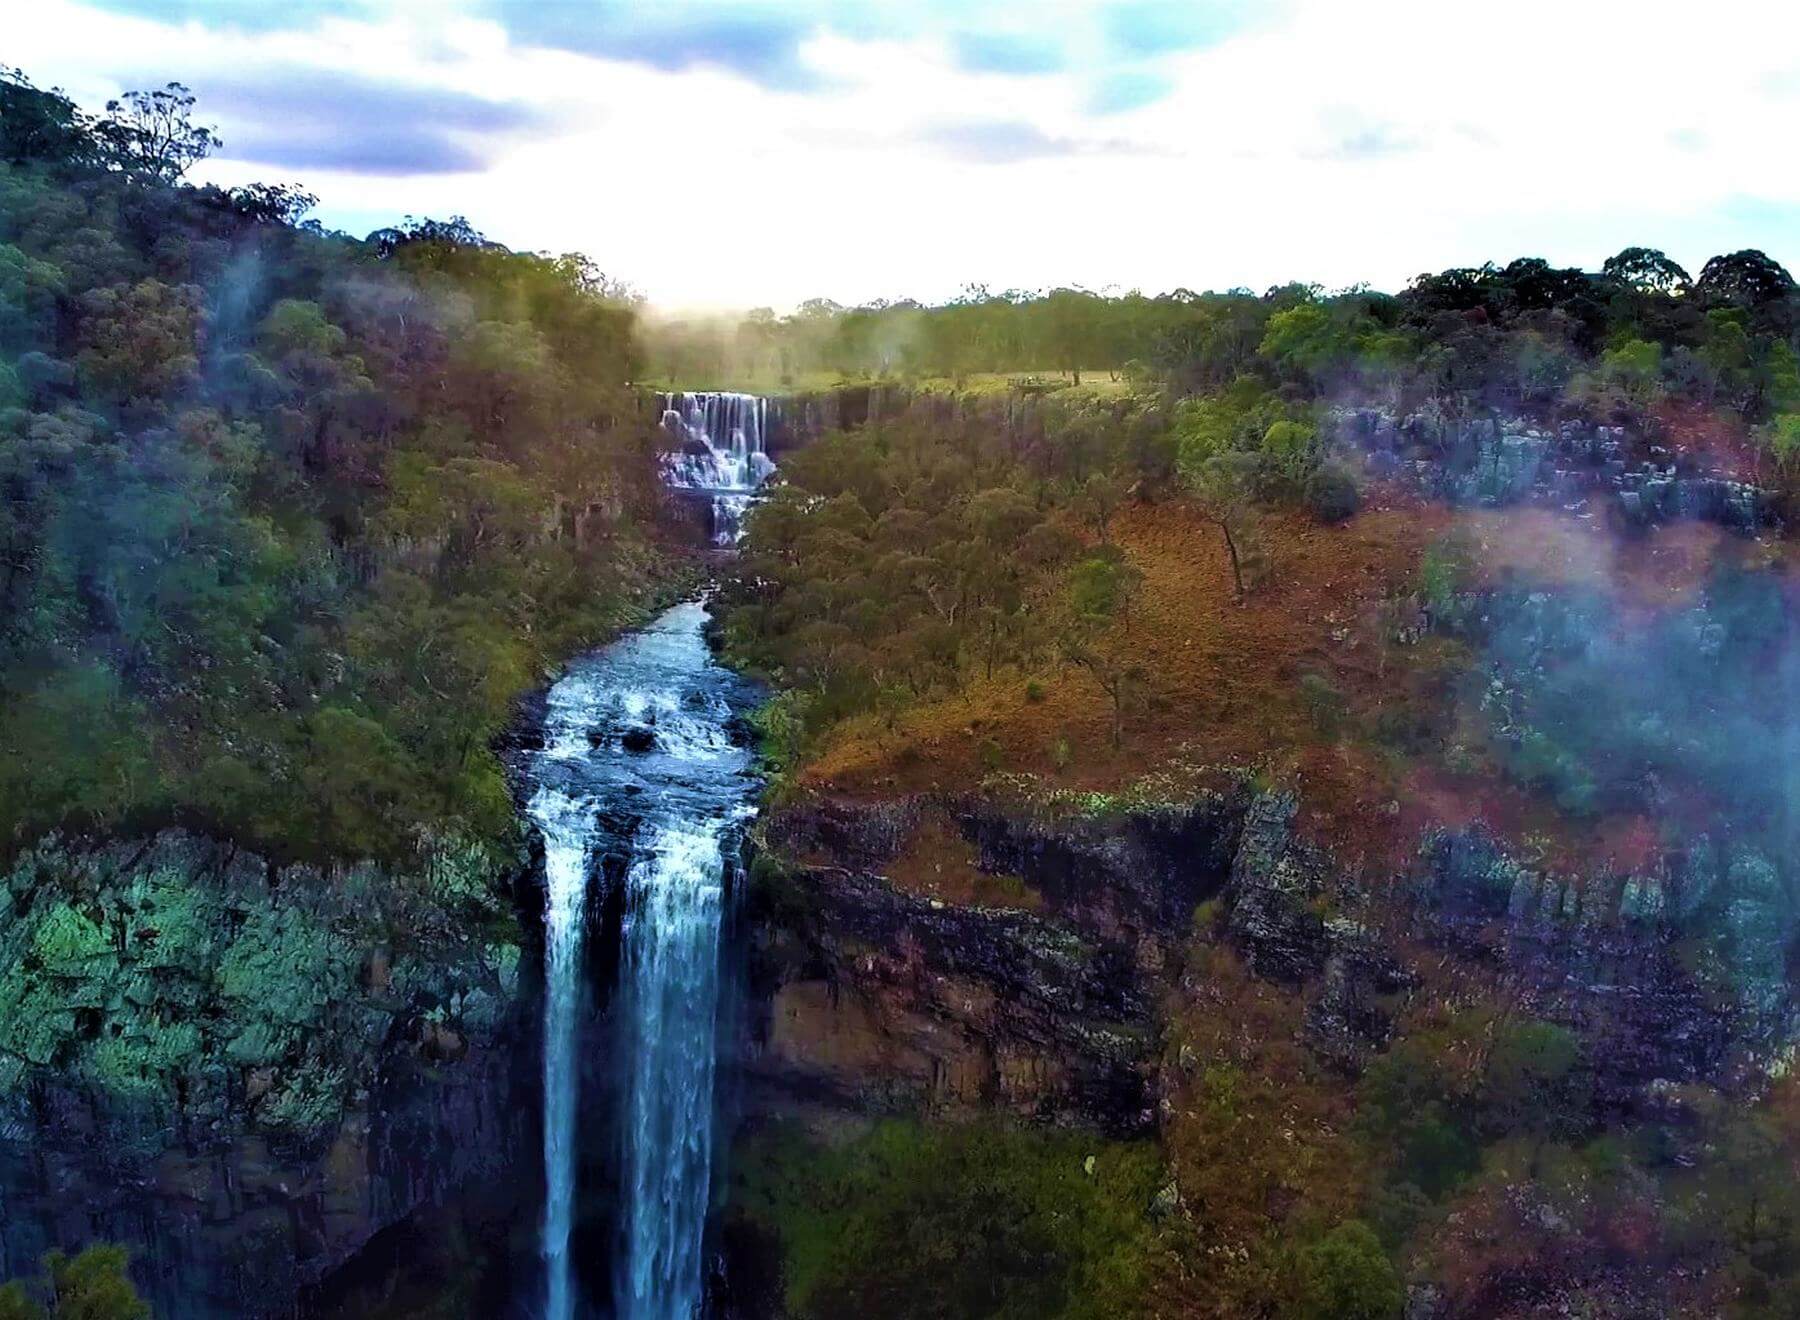 Wasserfall in Australien an der Ostküste - Ebor Falls